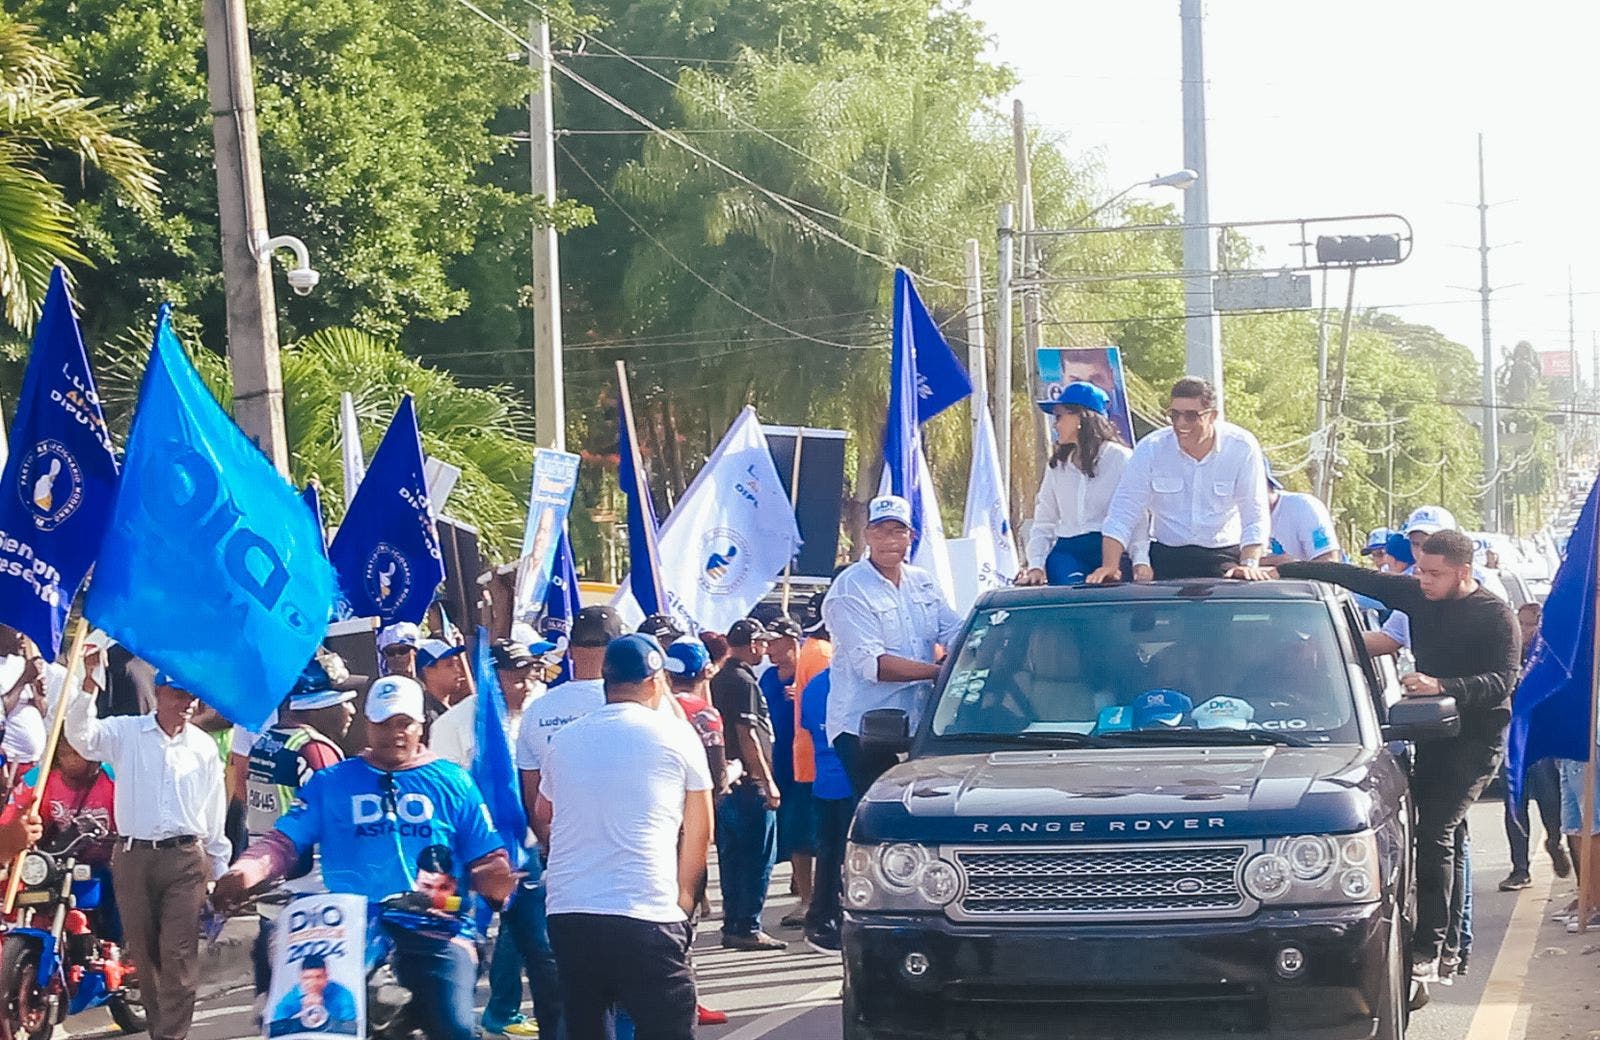 Dío Astacio realiza multitudinaria caravana en Santo Domingo Este